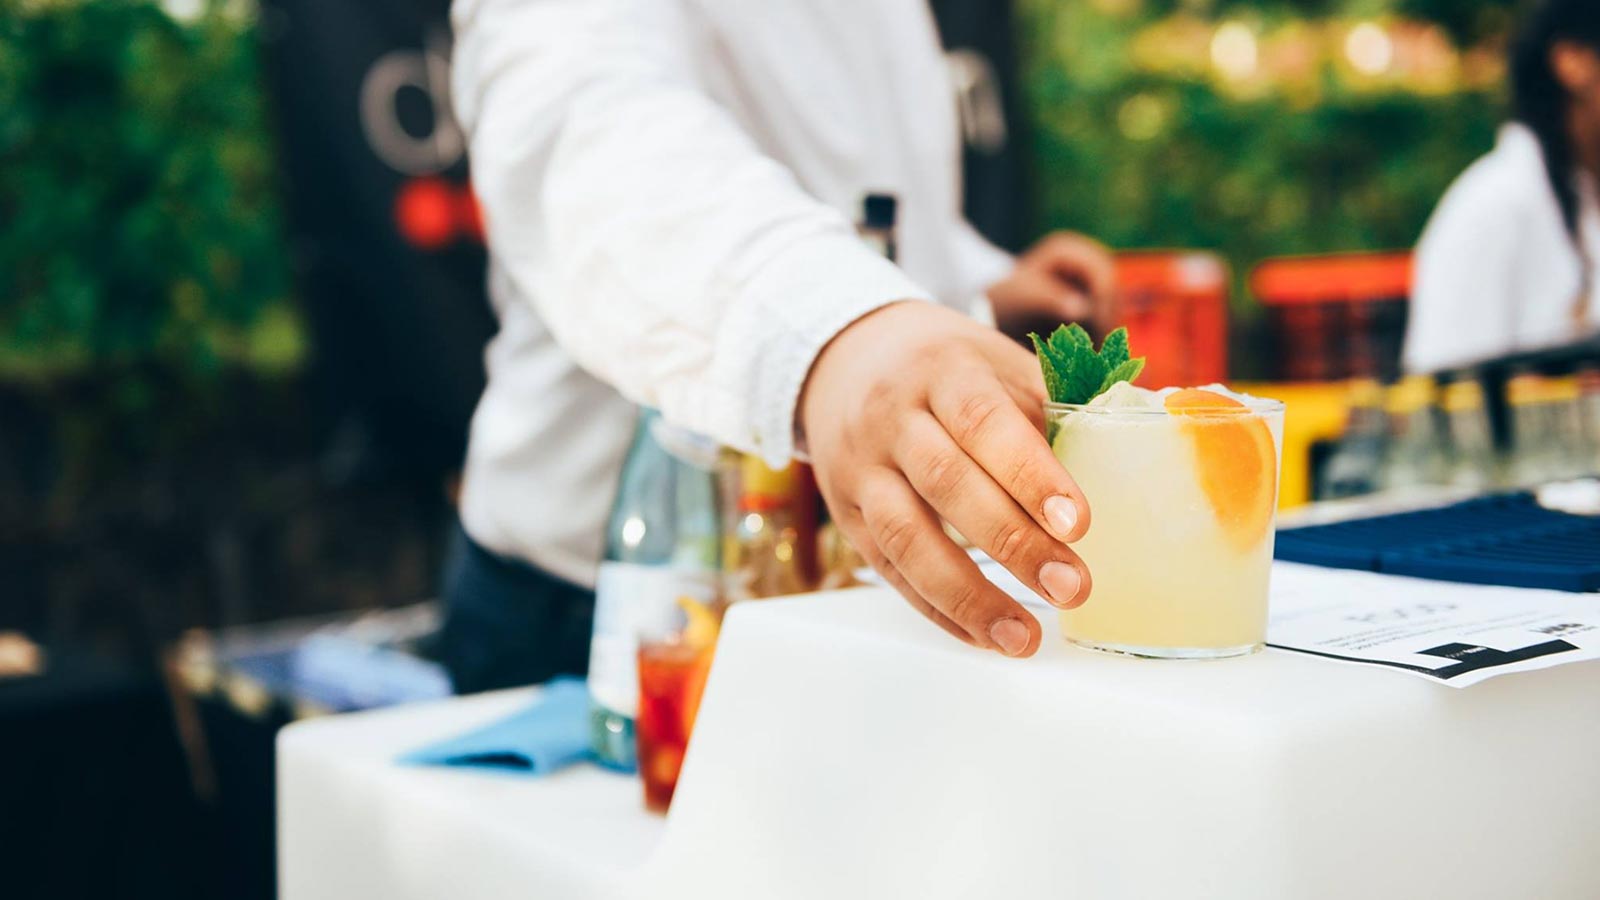 Dettaglio di un cocktail preparato durante un servizio catering